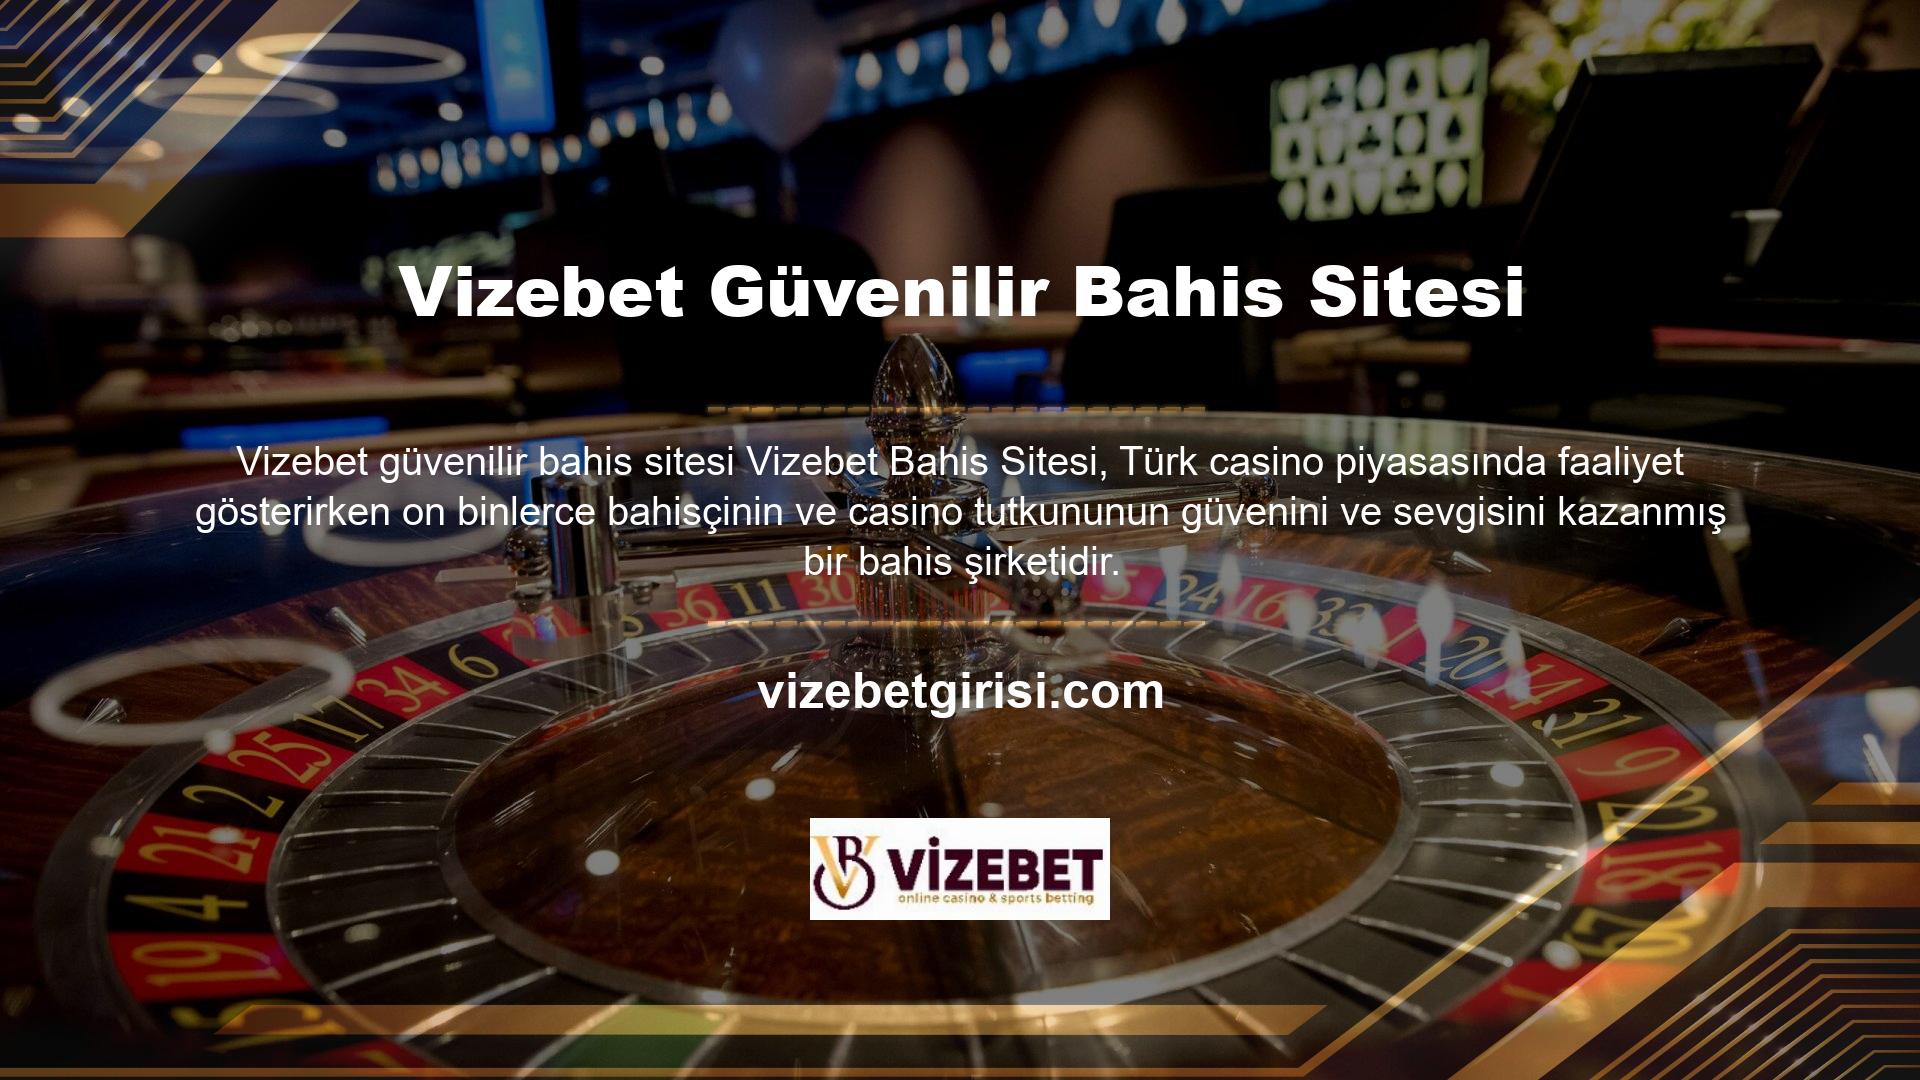 Çevrimiçi casino pazarında güven oluşturmak ve kullanıcıların tanınmasını sağlamak kolay bir iş değildir